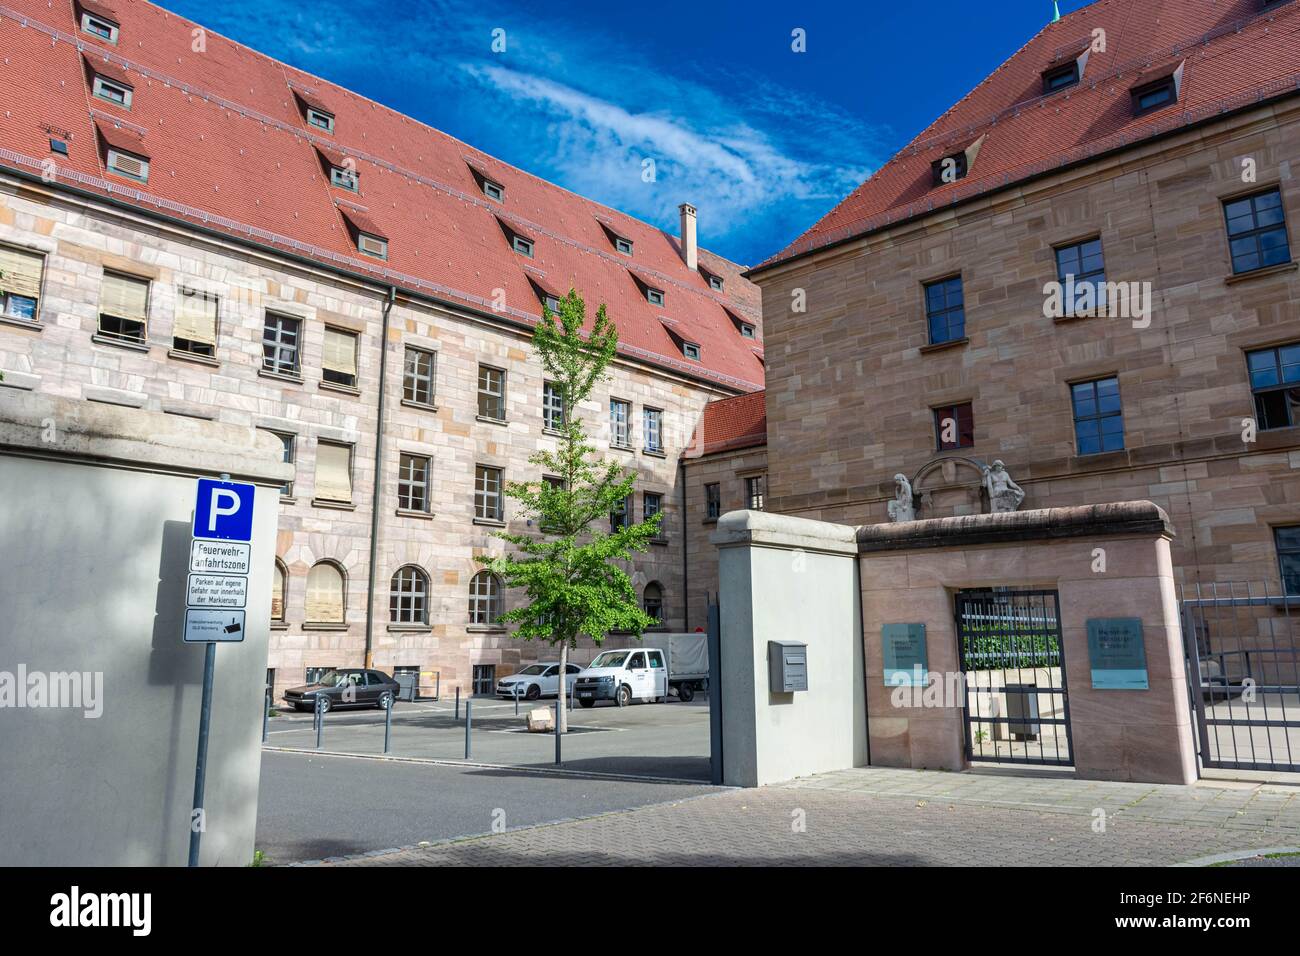 NÜRNBERG, 28. JULI 2020: Eingang zum Memorium Nurnberger Prozesse - die Gedenkstätte für die Nürnberger Prozesse in der Stadt Nürnberg, Deutschland. T Stockfoto